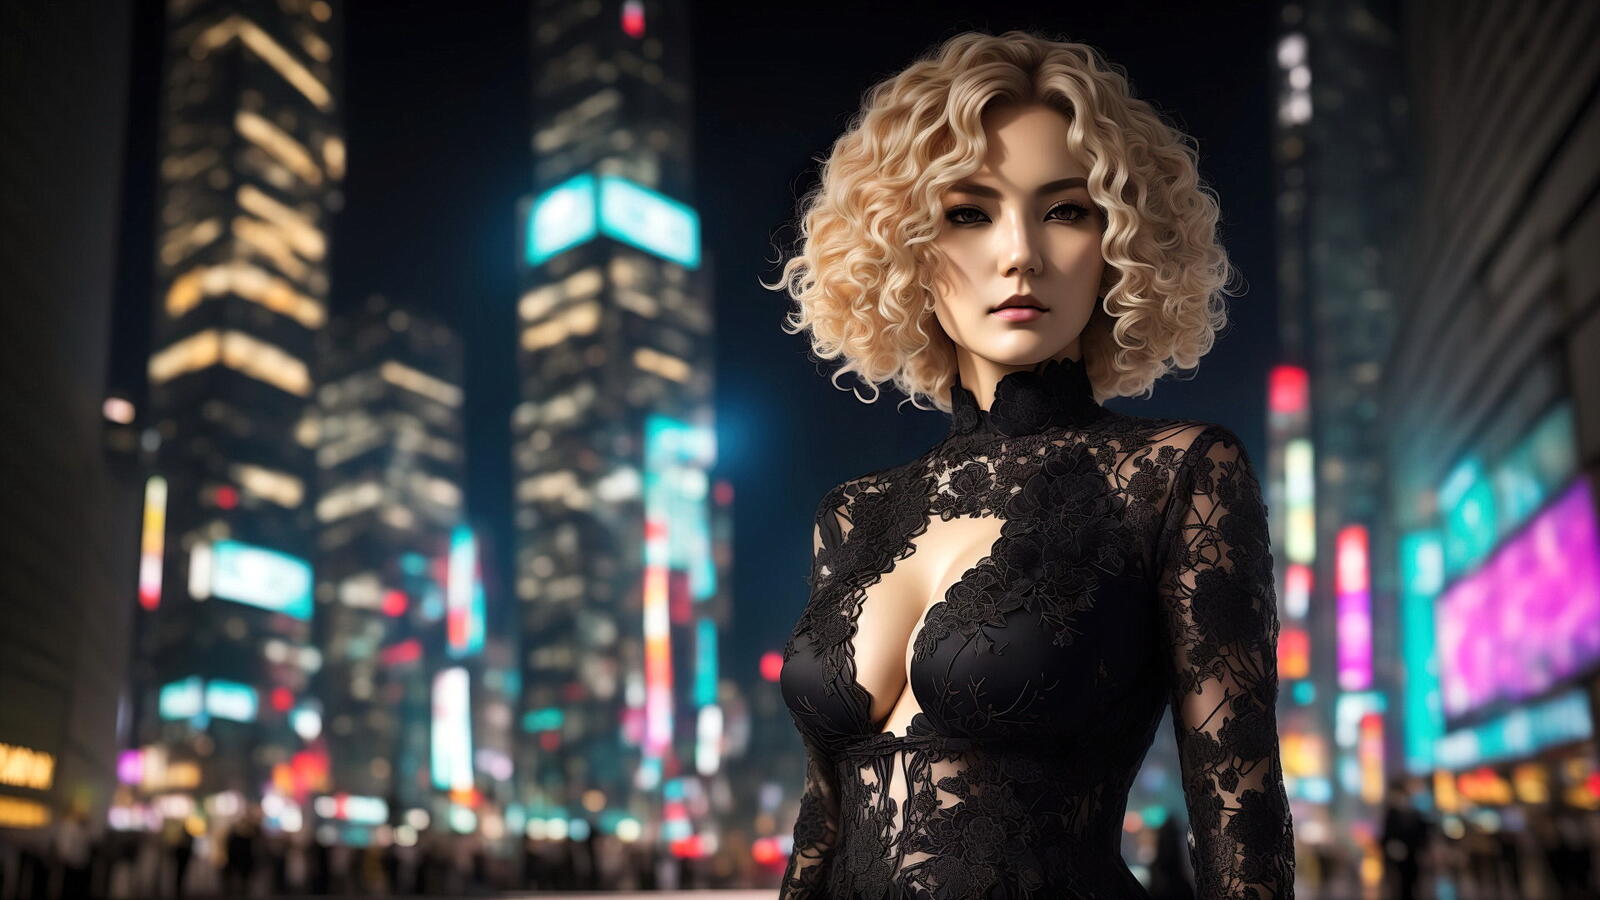 Бесплатное фото Девушка блондинка в платье на фоне ночного города